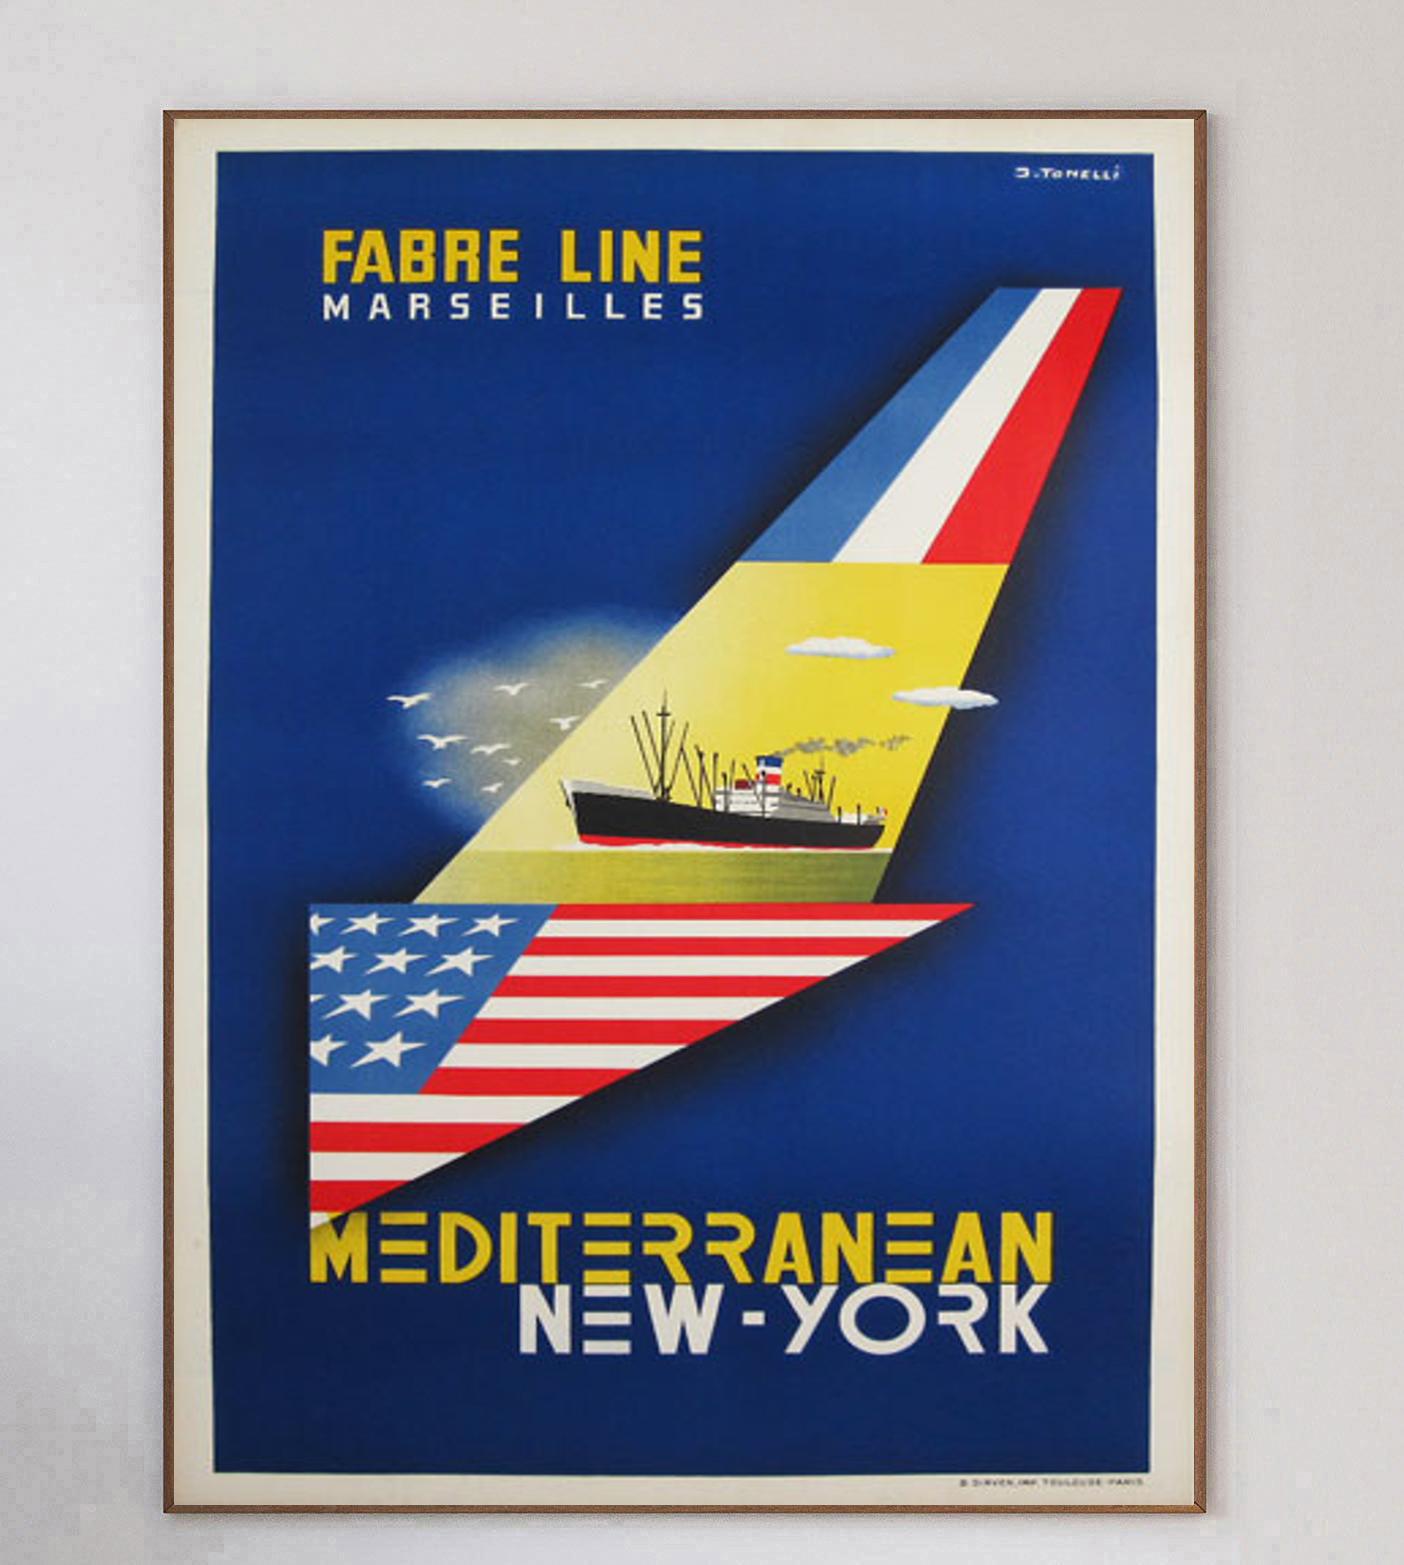 Dieses wunderschöne und seltene Plakat für die SNCF wurde von dem berühmten Plakat- und Grafikdesigner Bernard Villemot entworfen. Er ist vor allem für seine Kollaborationen mit Unternehmen wie Bally, Air France und Perrier bekannt und gilt als